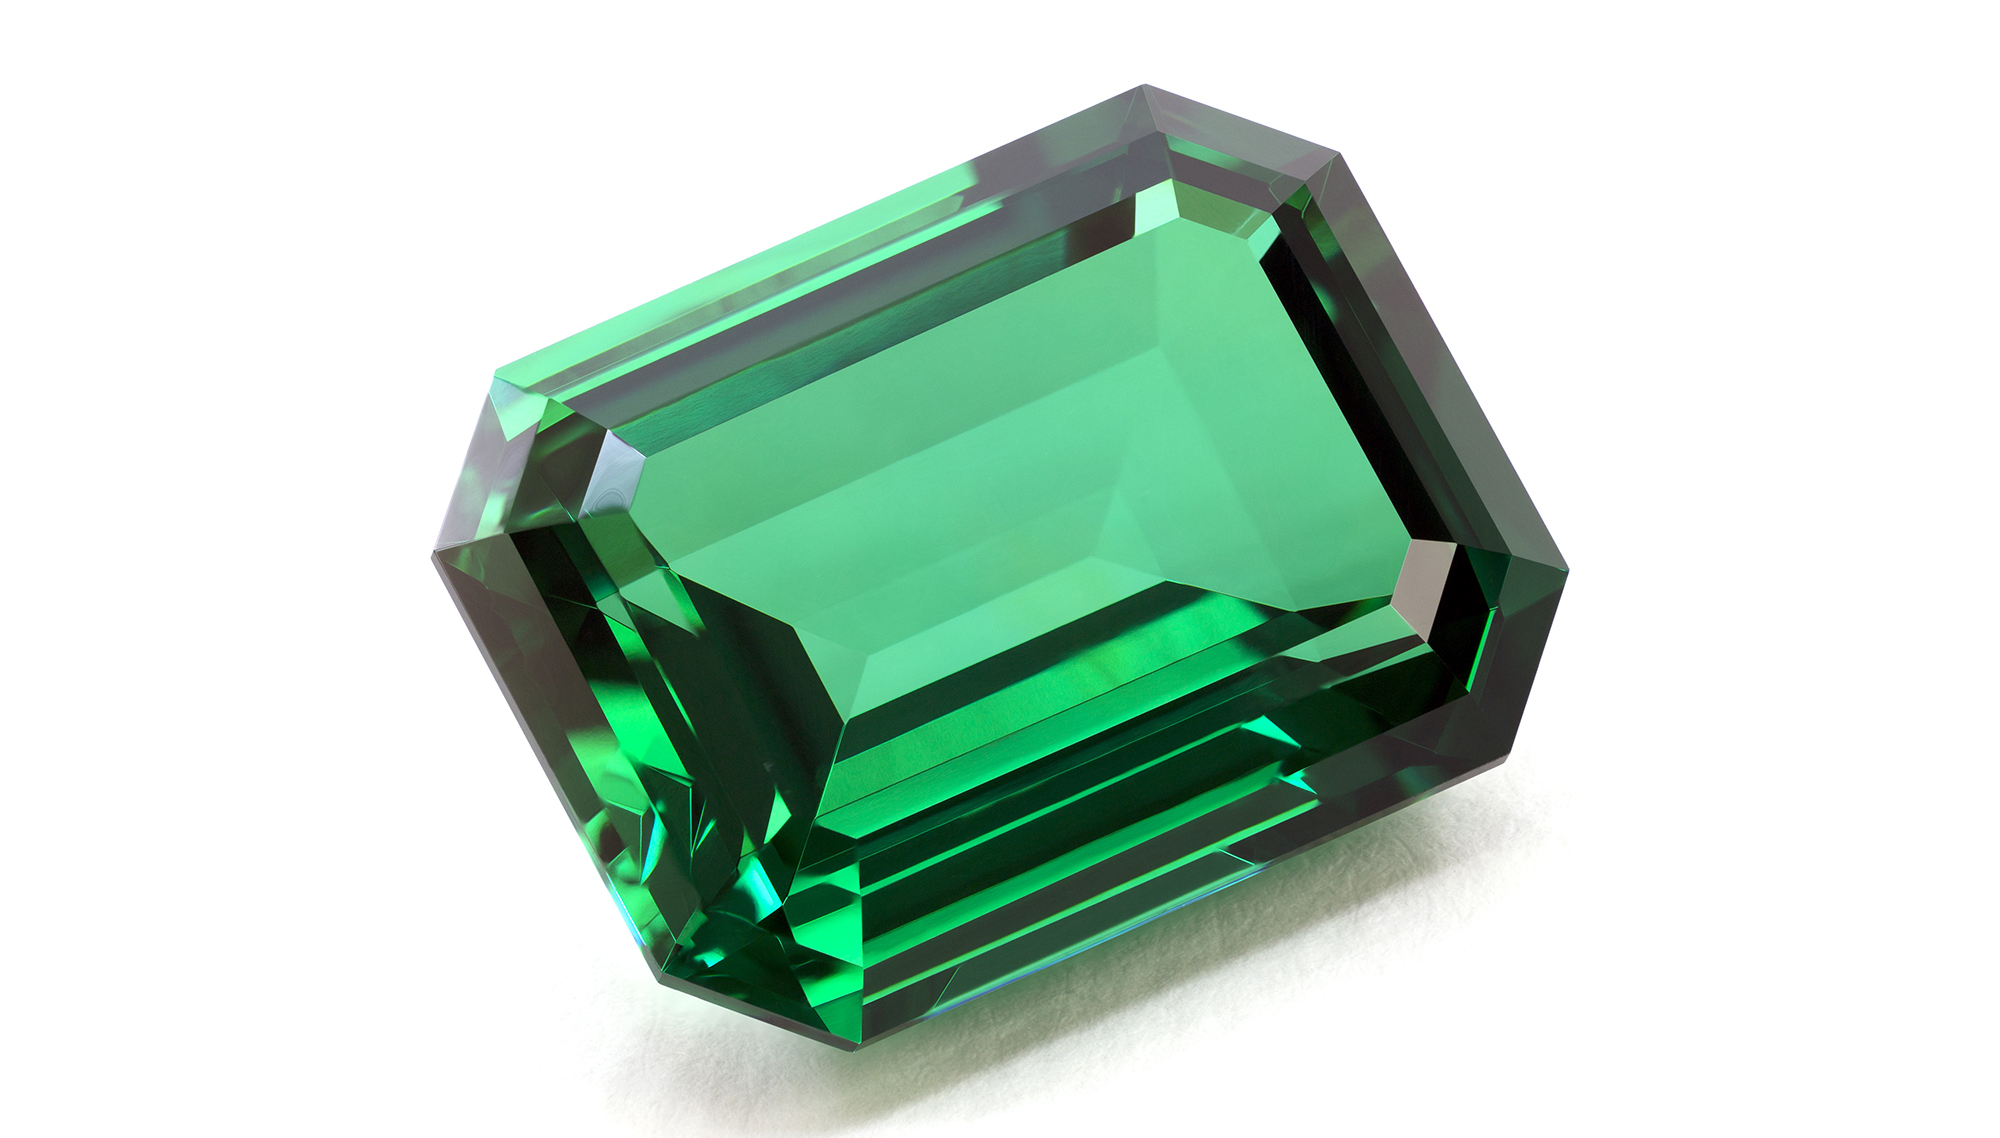 Emerald lives